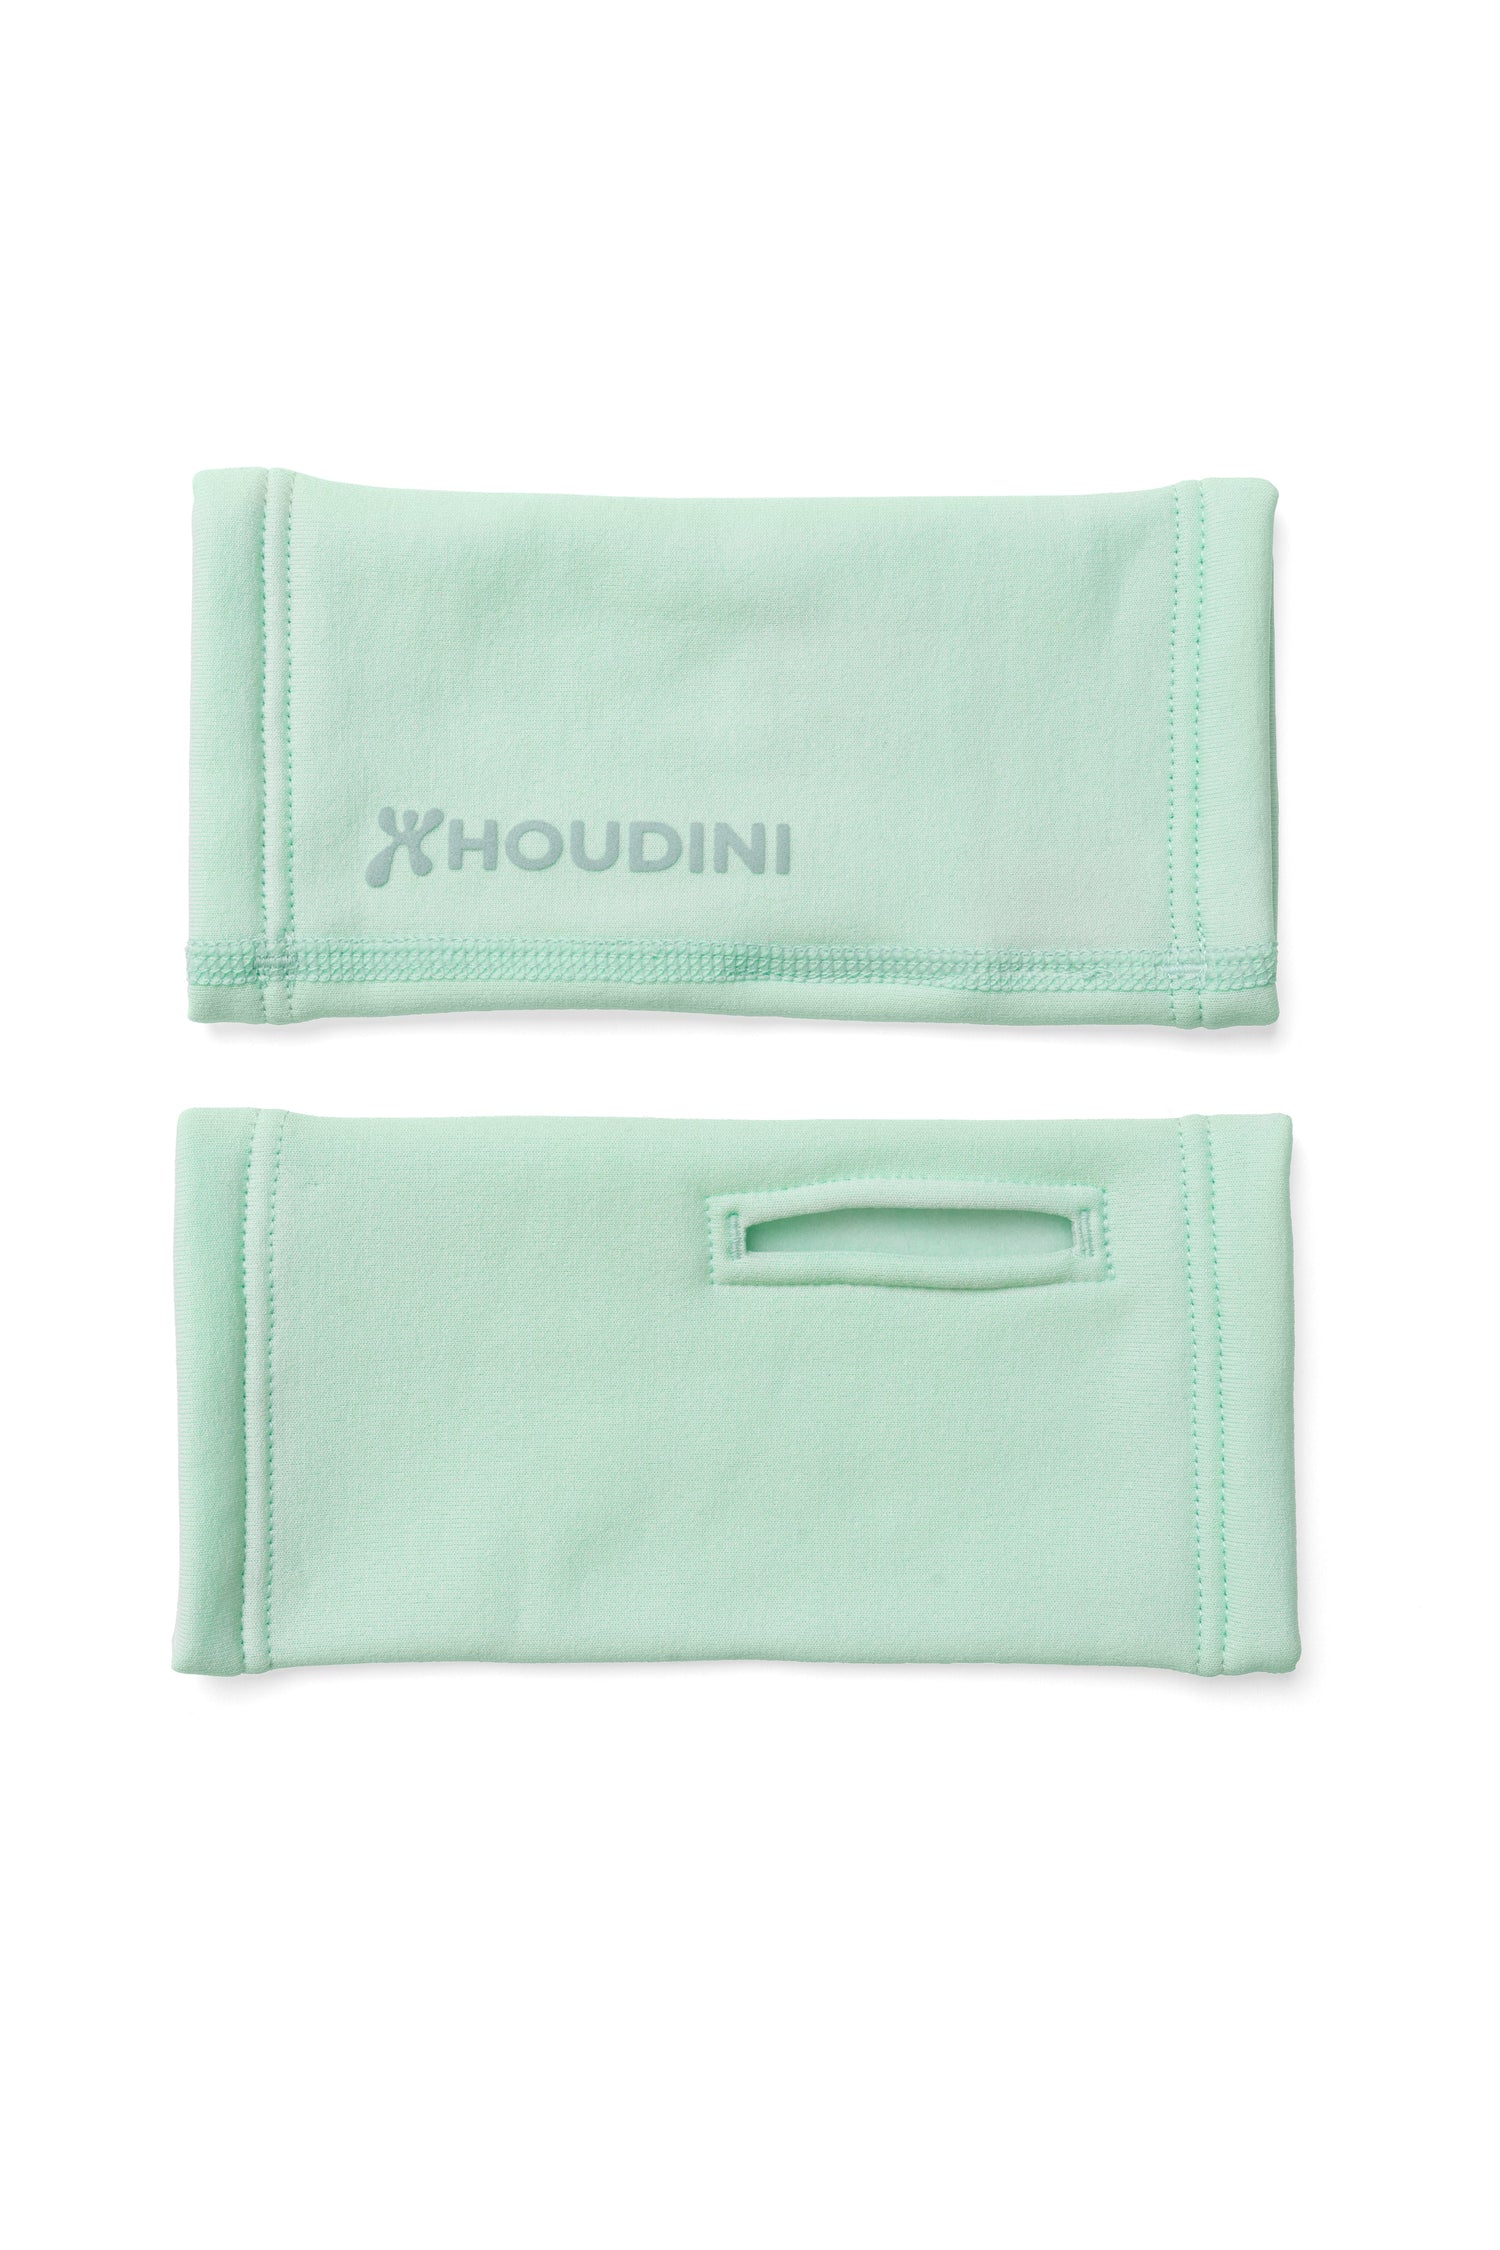 Houdini - Power Wrist Gaiters - Bluesign® certified PET-fleece - Weekendbee - sustainable sportswear